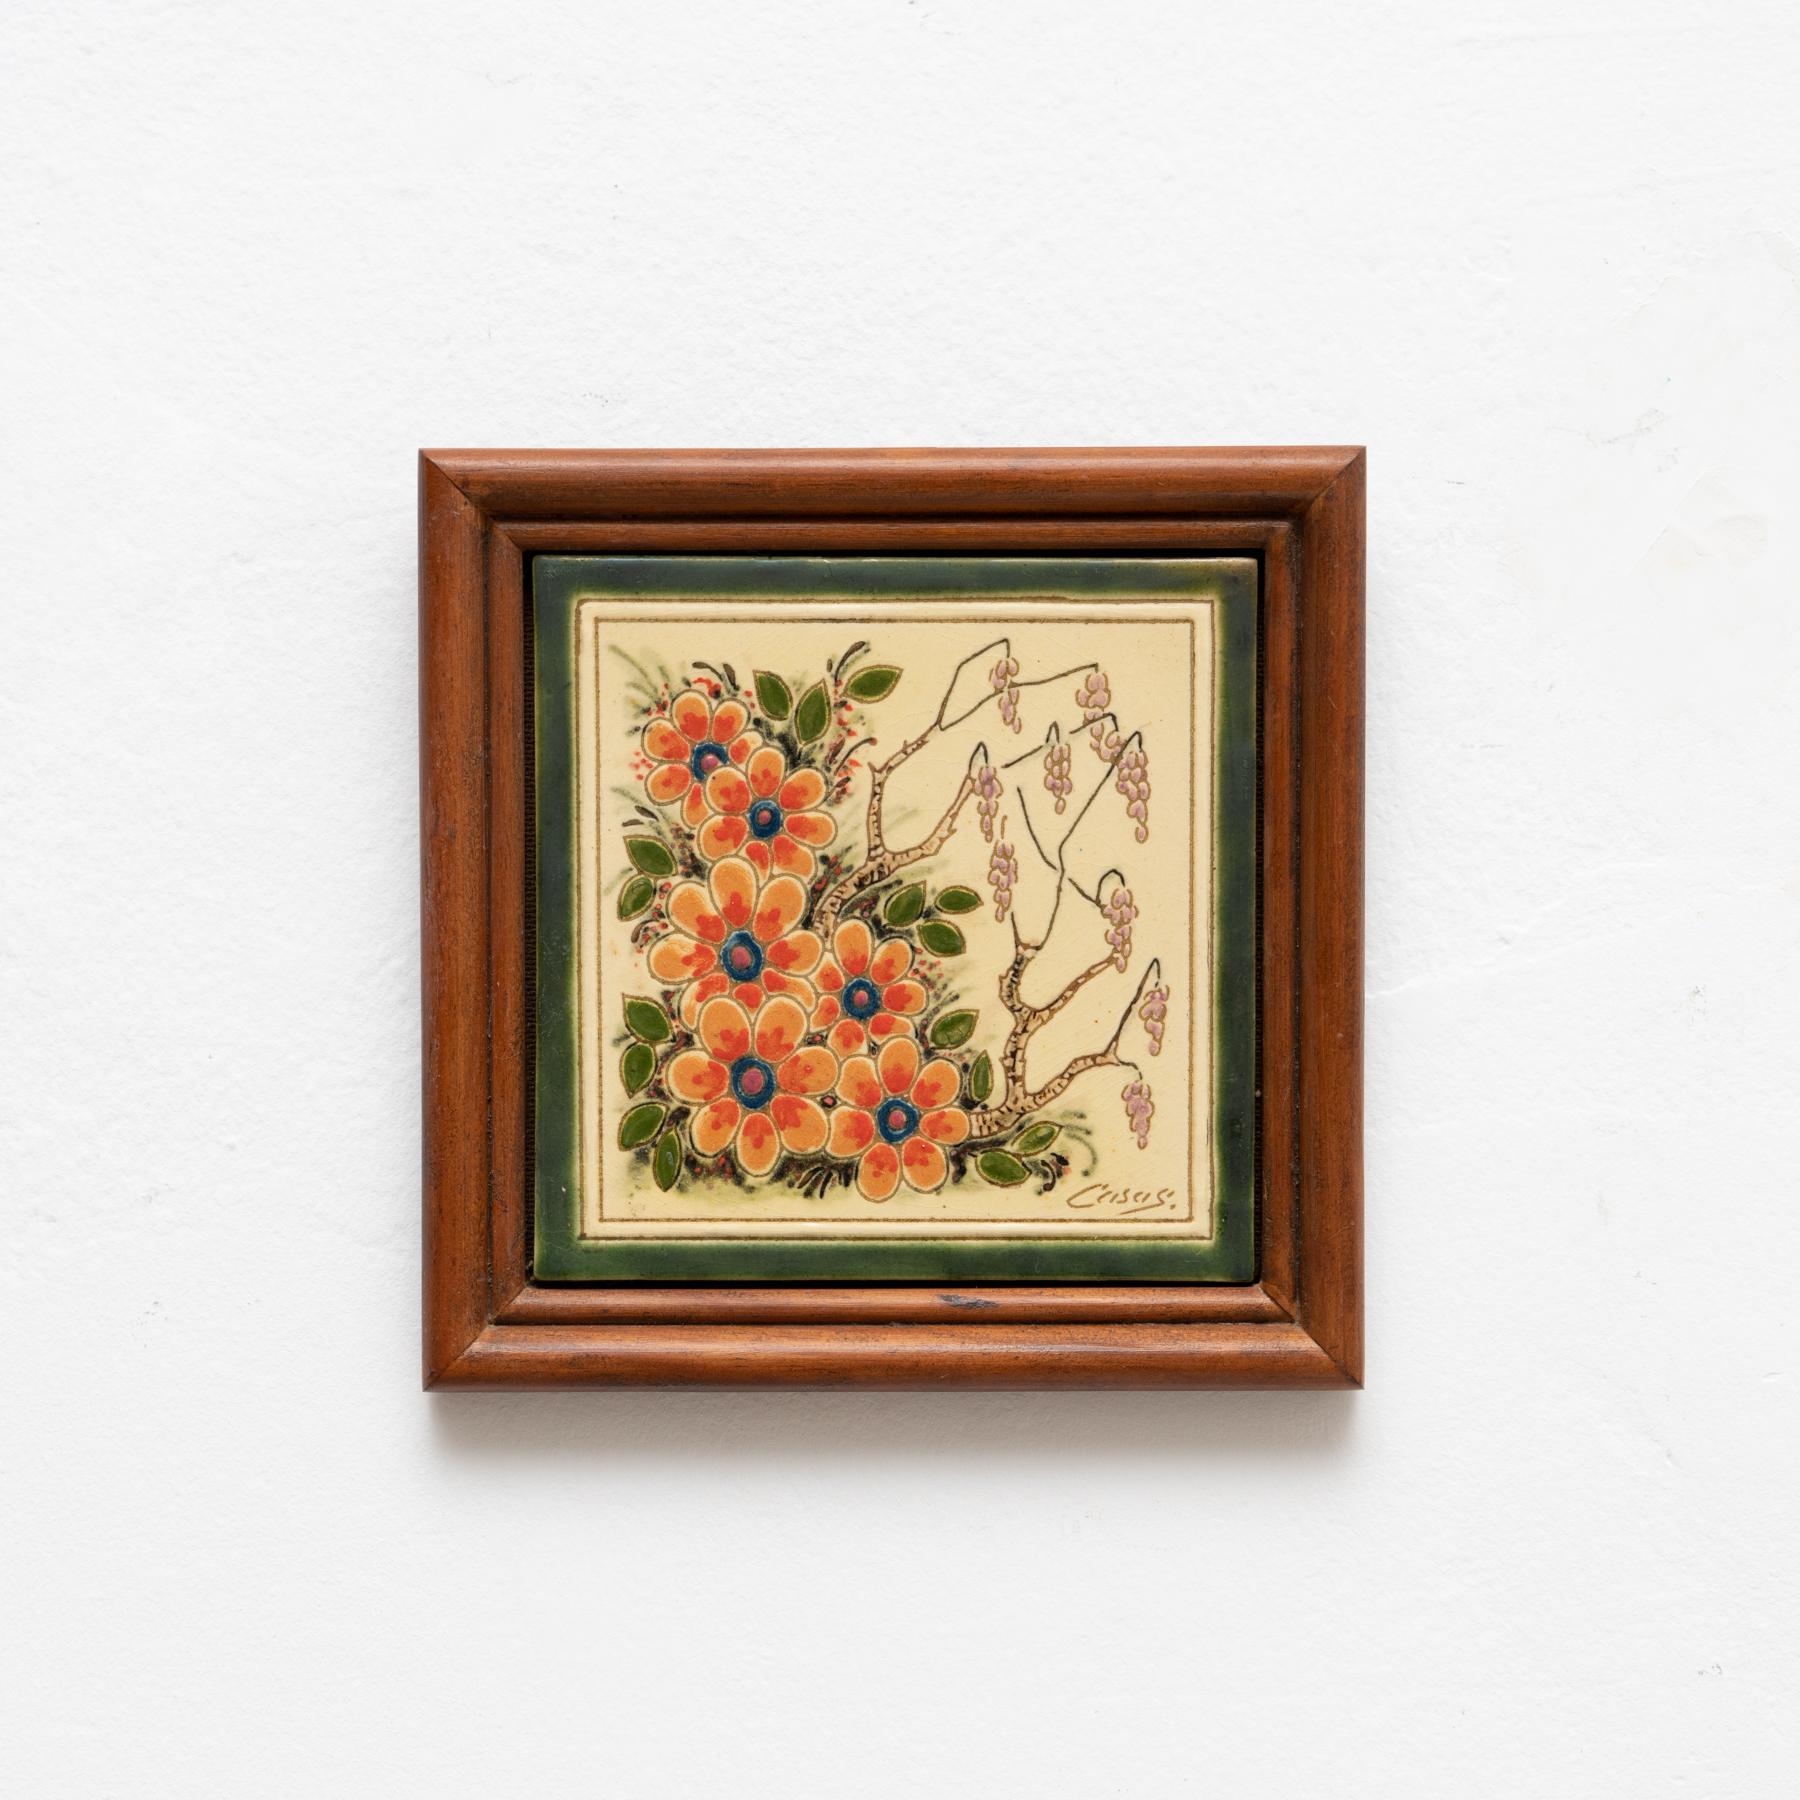 Œuvre d'art floral en céramique peinte à la main par l'artiste catalan Casas, vers 1960.
Encadré. Signé.

En état d'origine, avec une usure mineure correspondant à l'âge et à l'utilisation, préservant une belle patine.